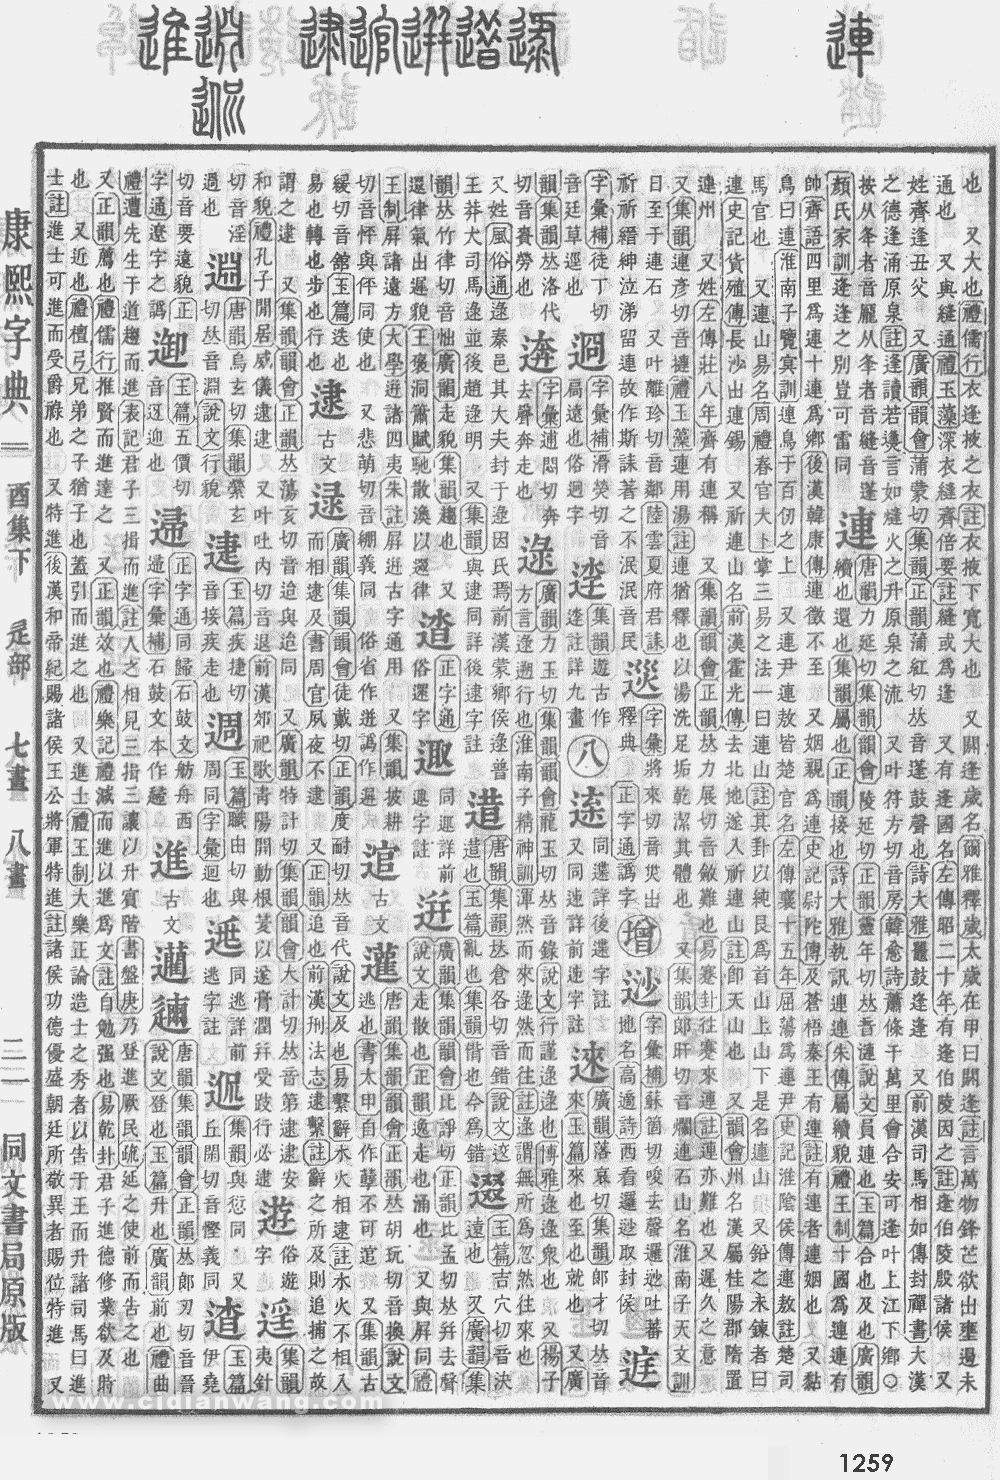 康熙字典掃描版第1259頁